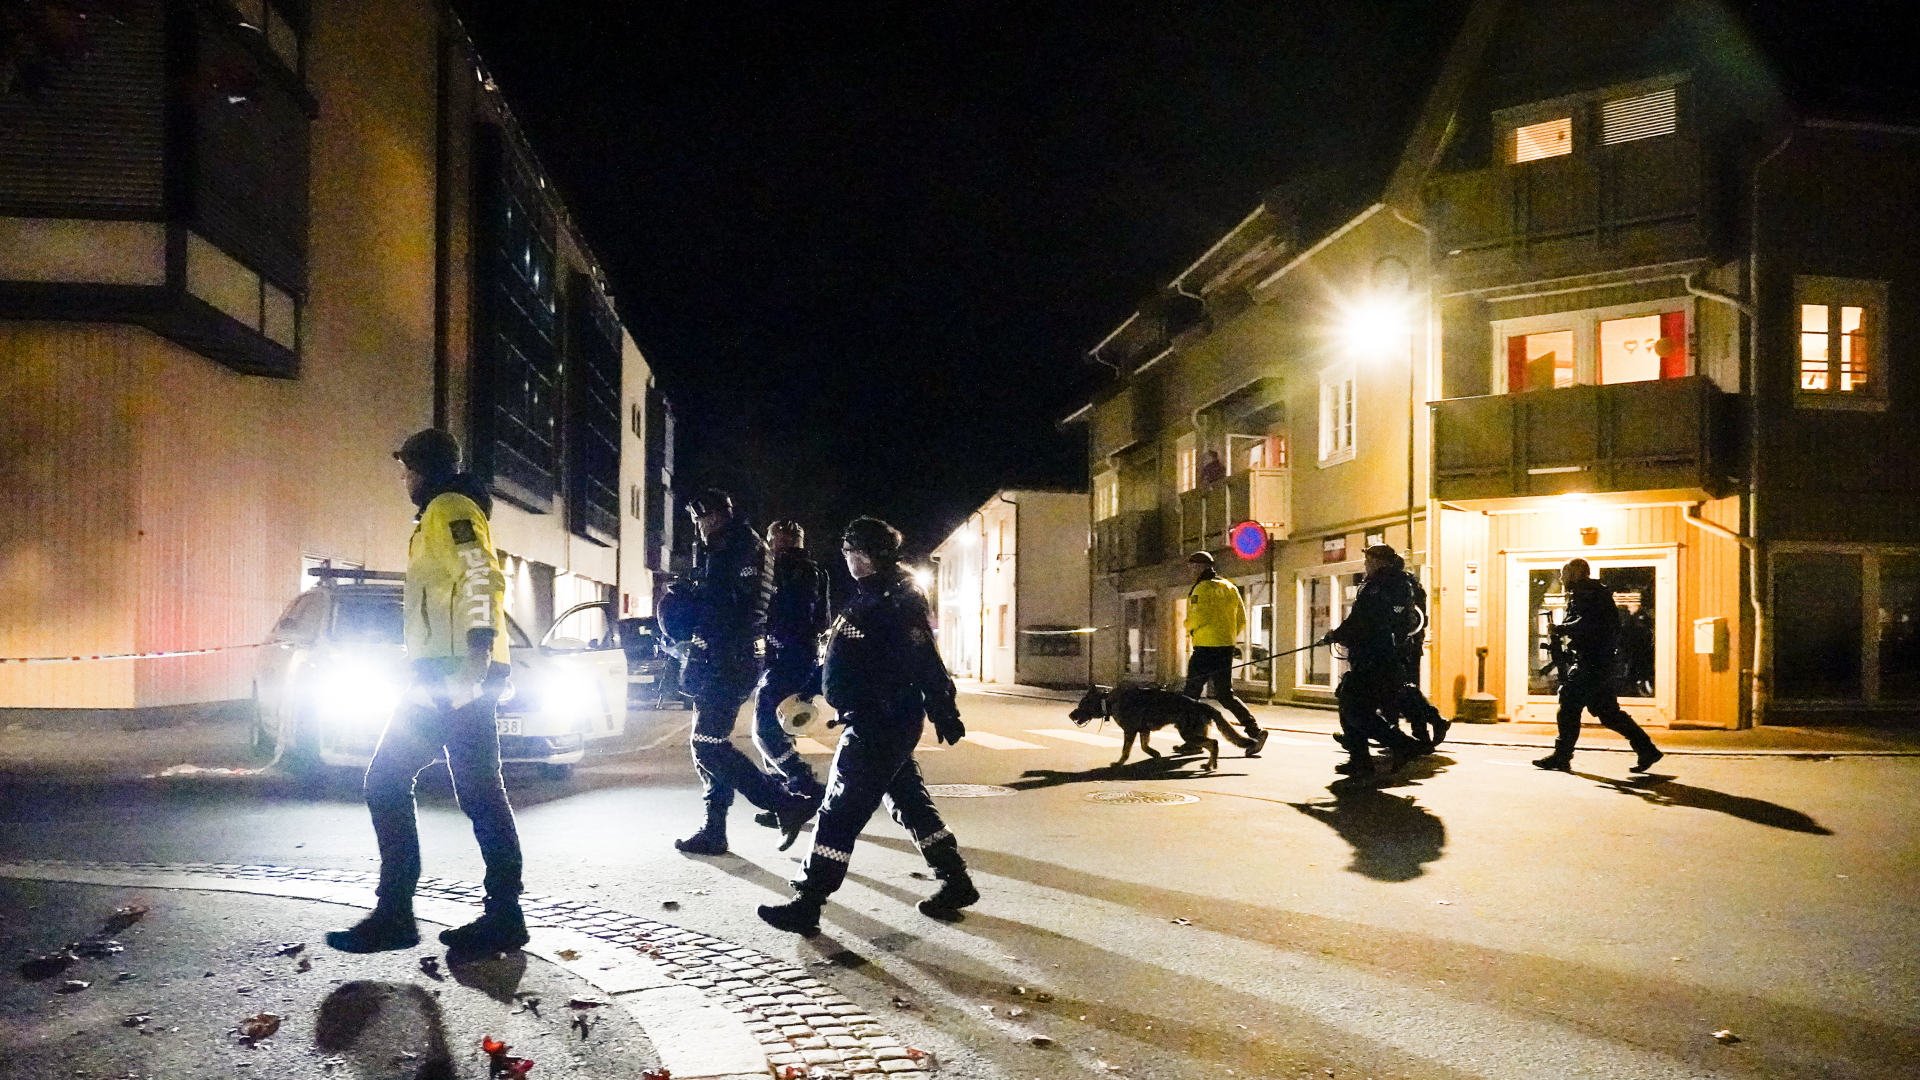 Polizisten auf Spurensuche nach Gewalttat in Kongsberg